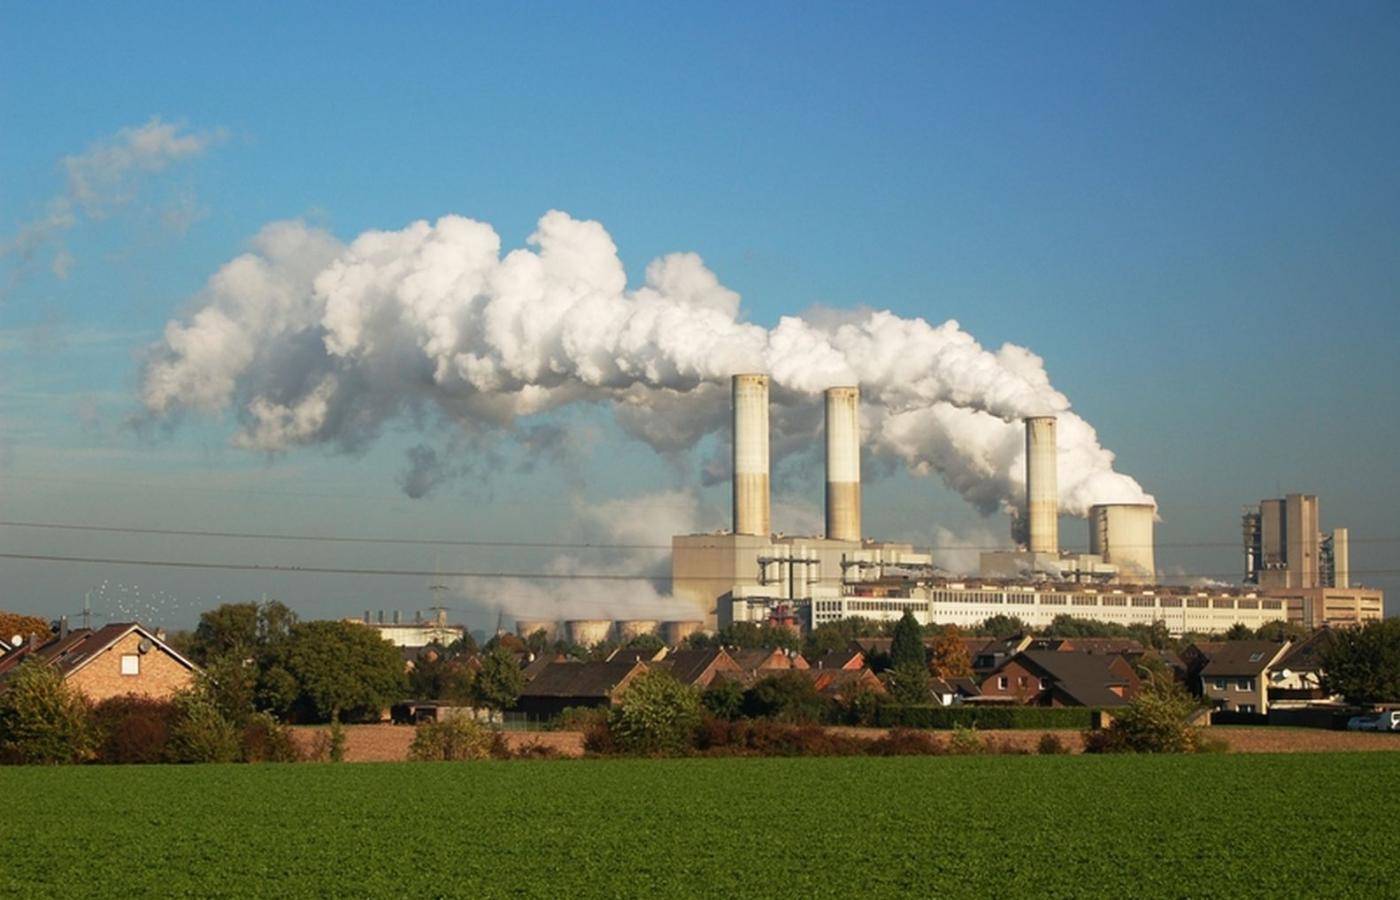 Najbardziej gorącym tematem są elektrownie węglowe, których przyszłość stoi pod znakiem zapytania.